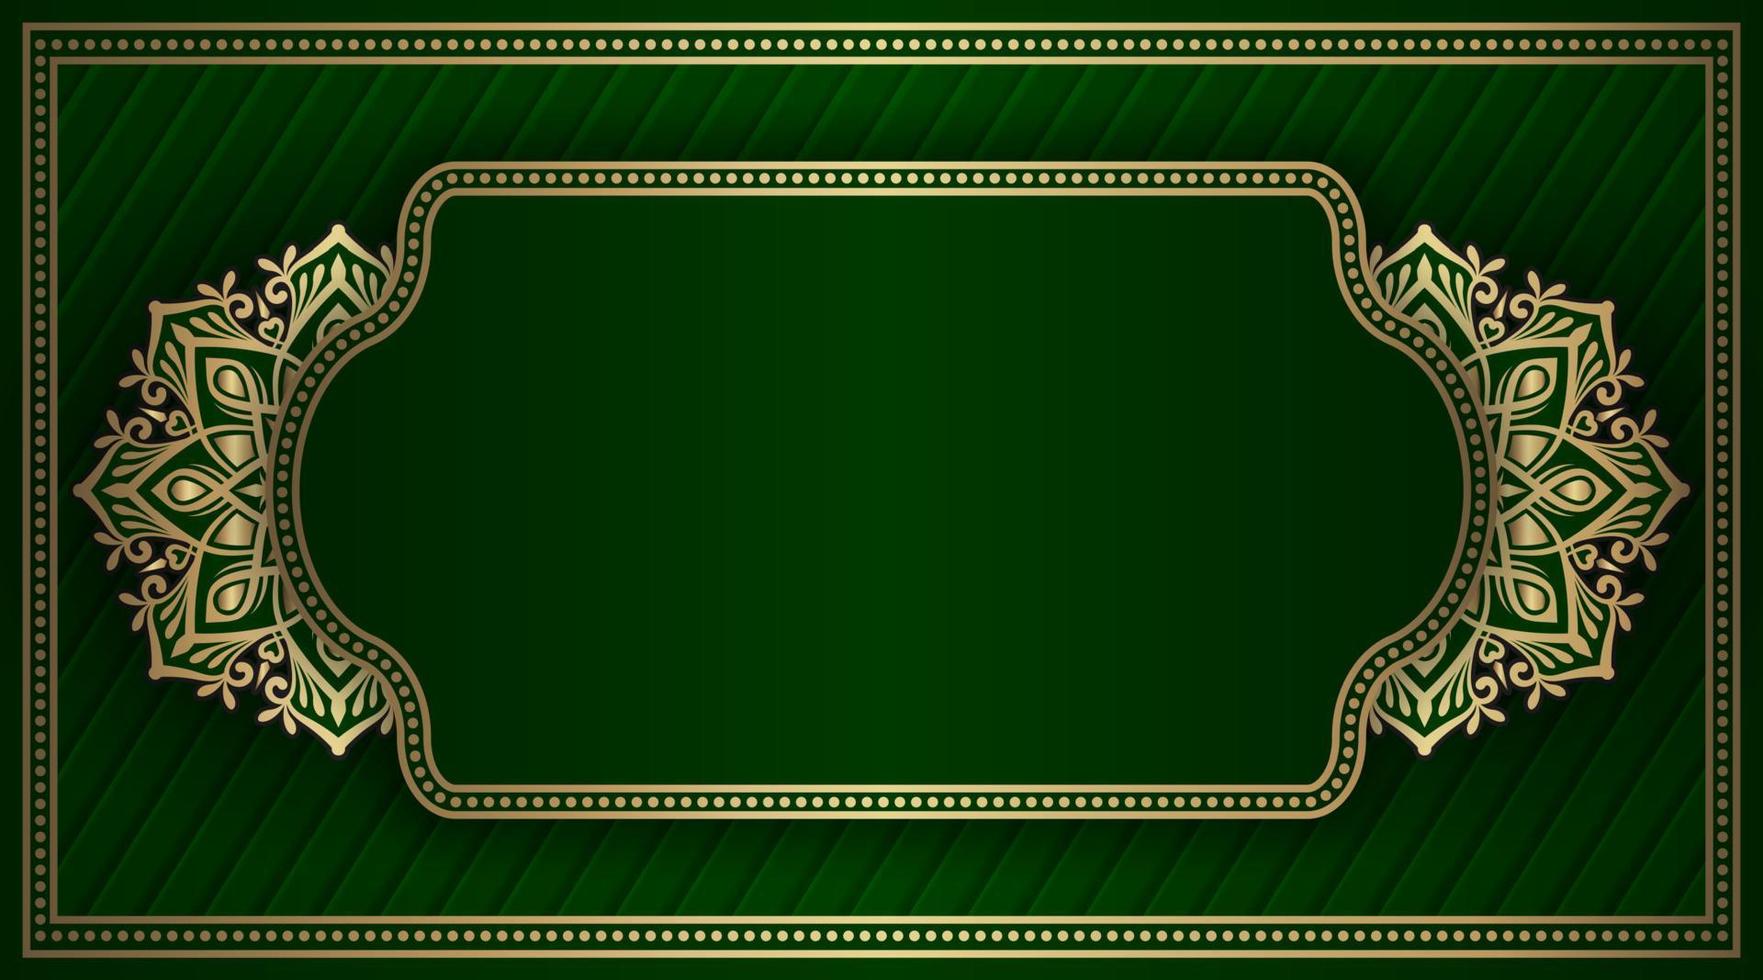 fundo verde com ornamento de mandala dourada vetor